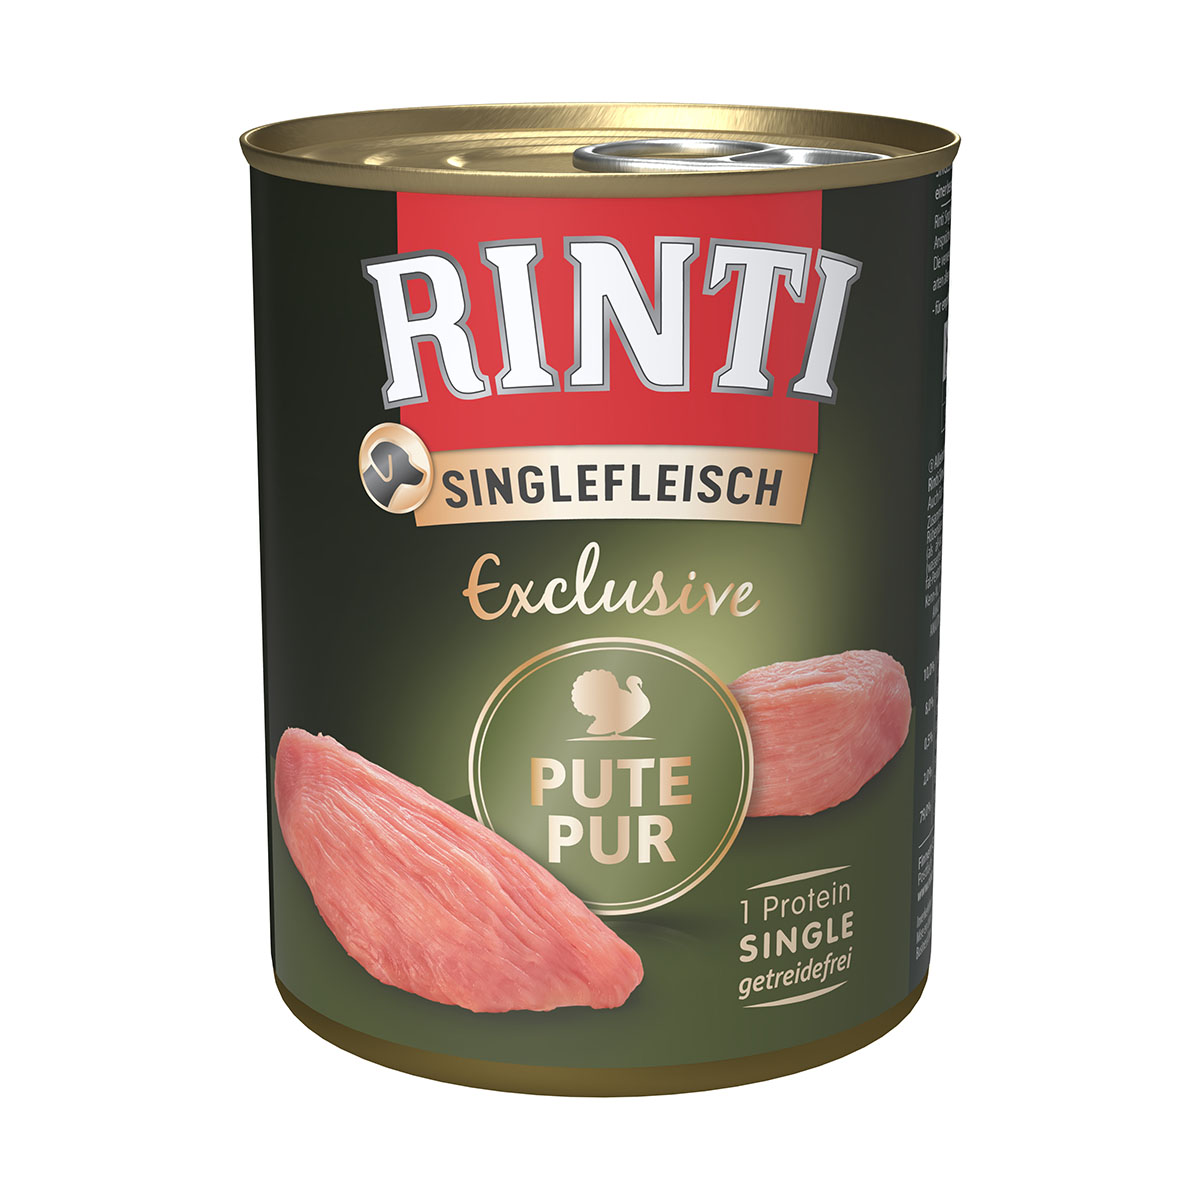 Rinti Singlefleisch Exclusive Pute pur 6x800g